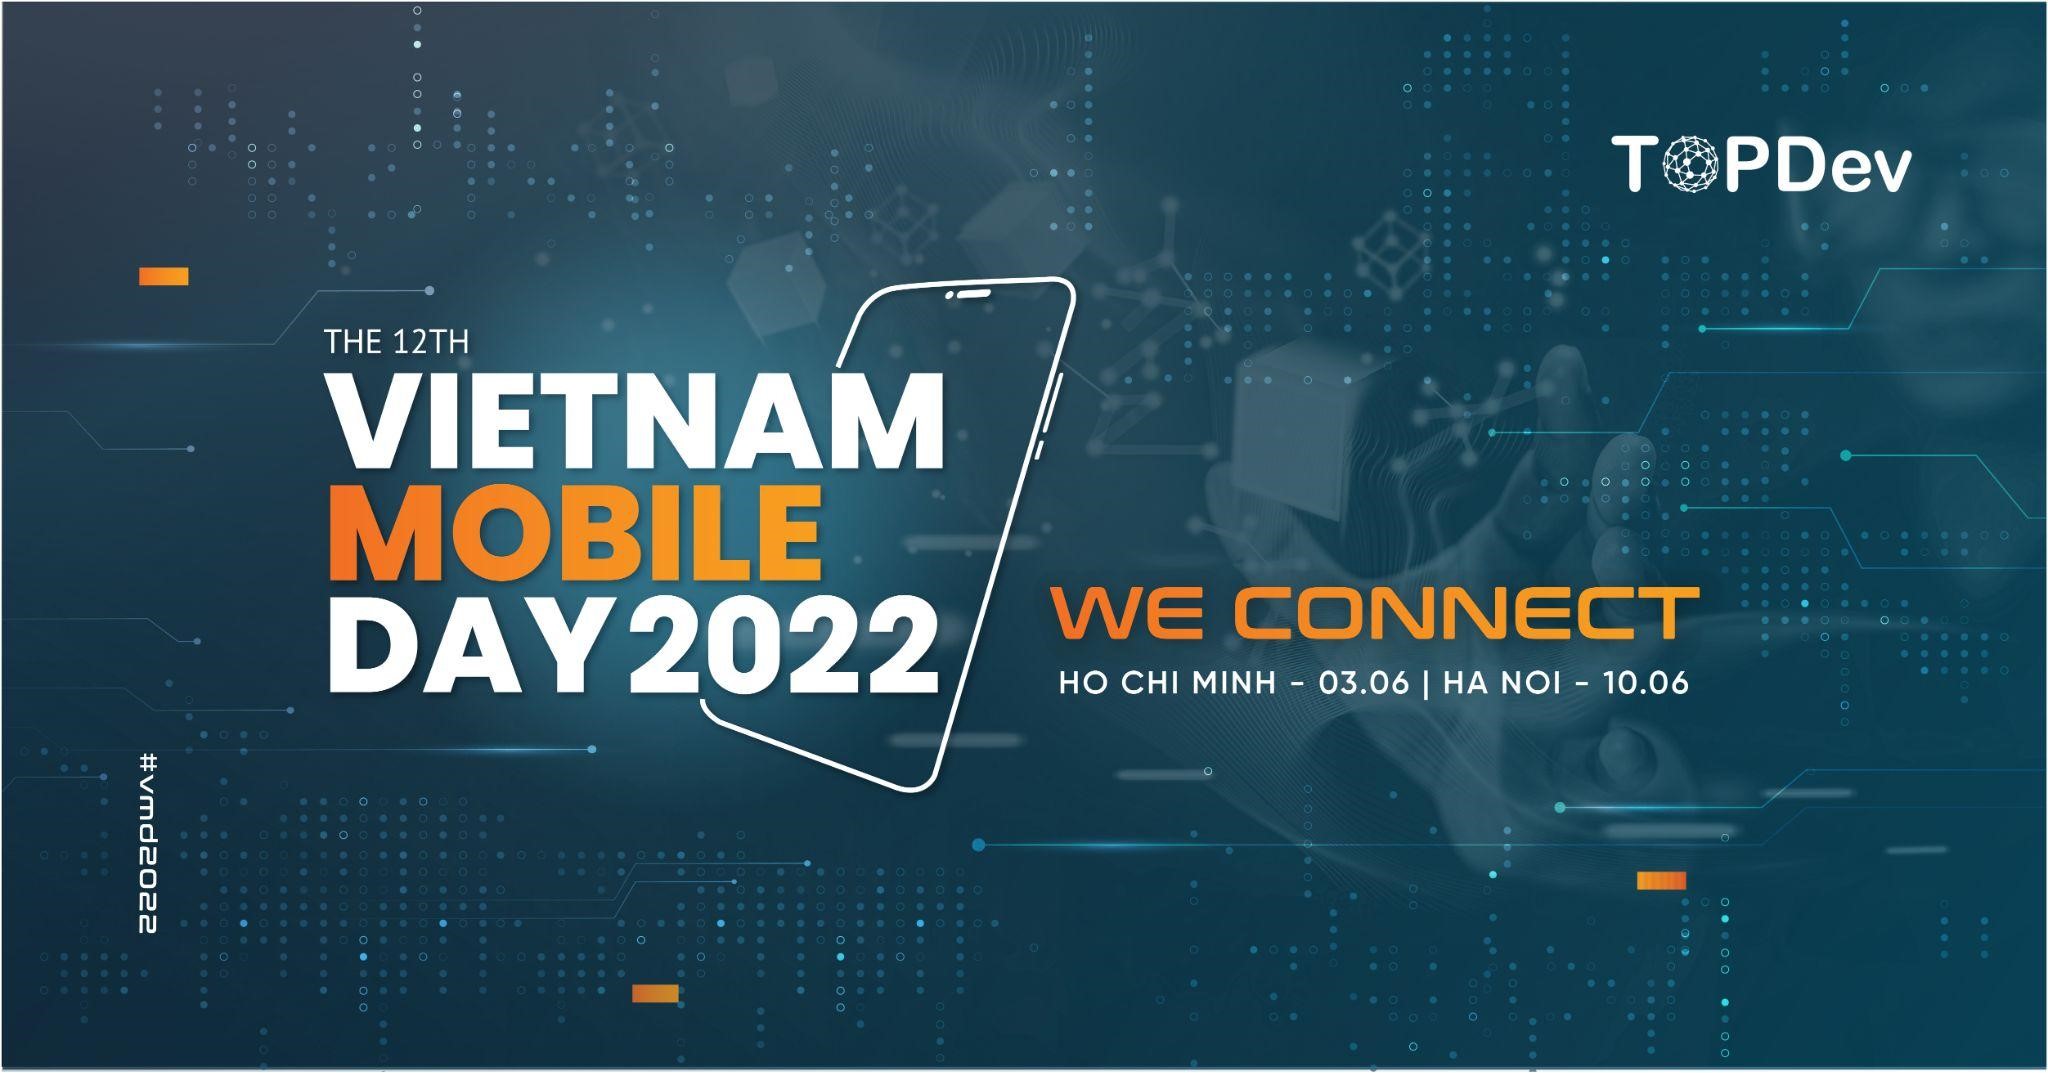 VietNam Mobile Day 2022: Sân chơi quen thuộc của cộng đồng công nghệ Việt Nam đã quay trở lại